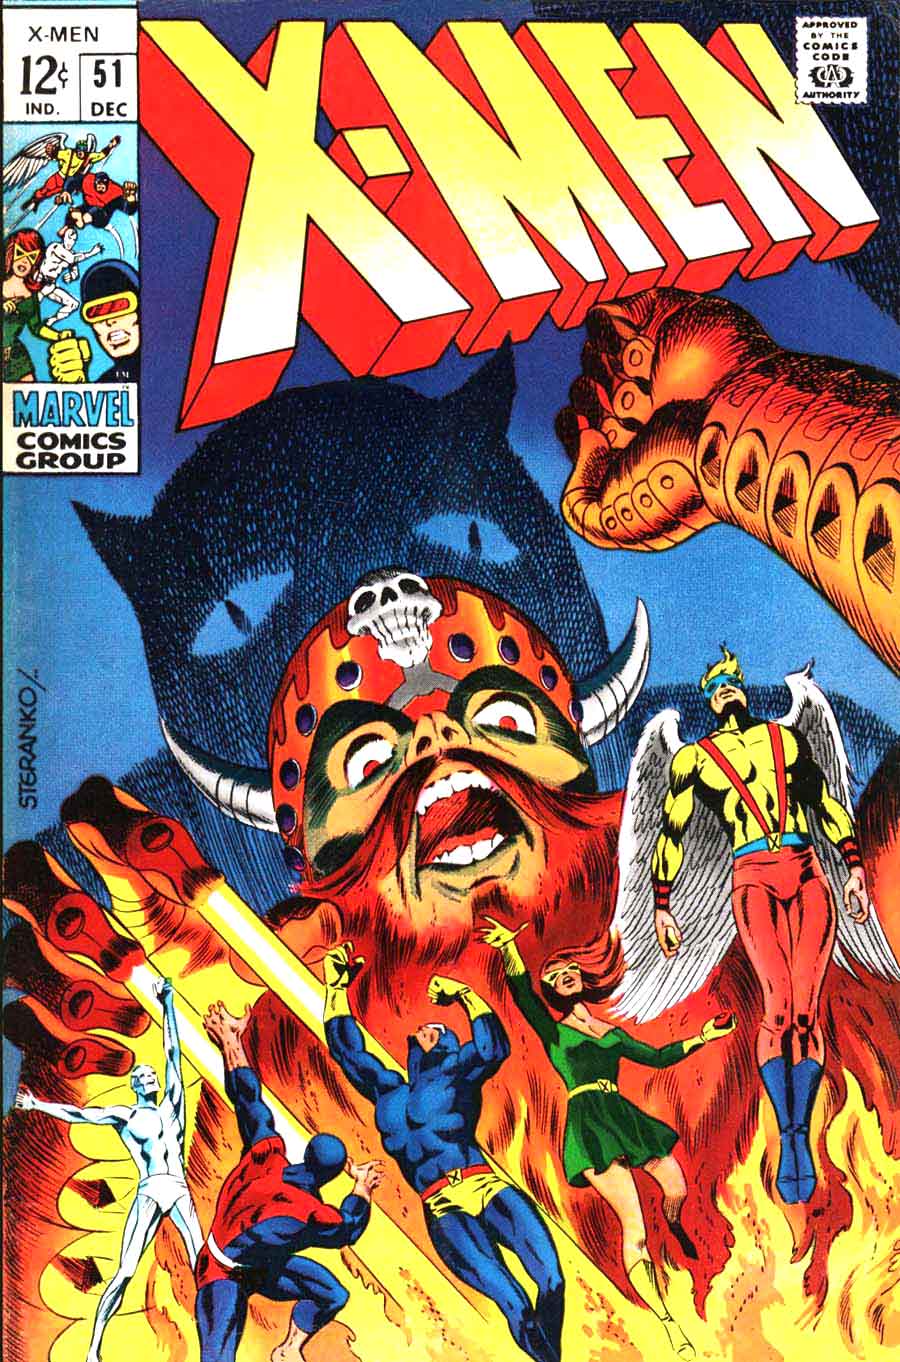 X-men v1 #51 marvel comic book cover art by Jim Steranko